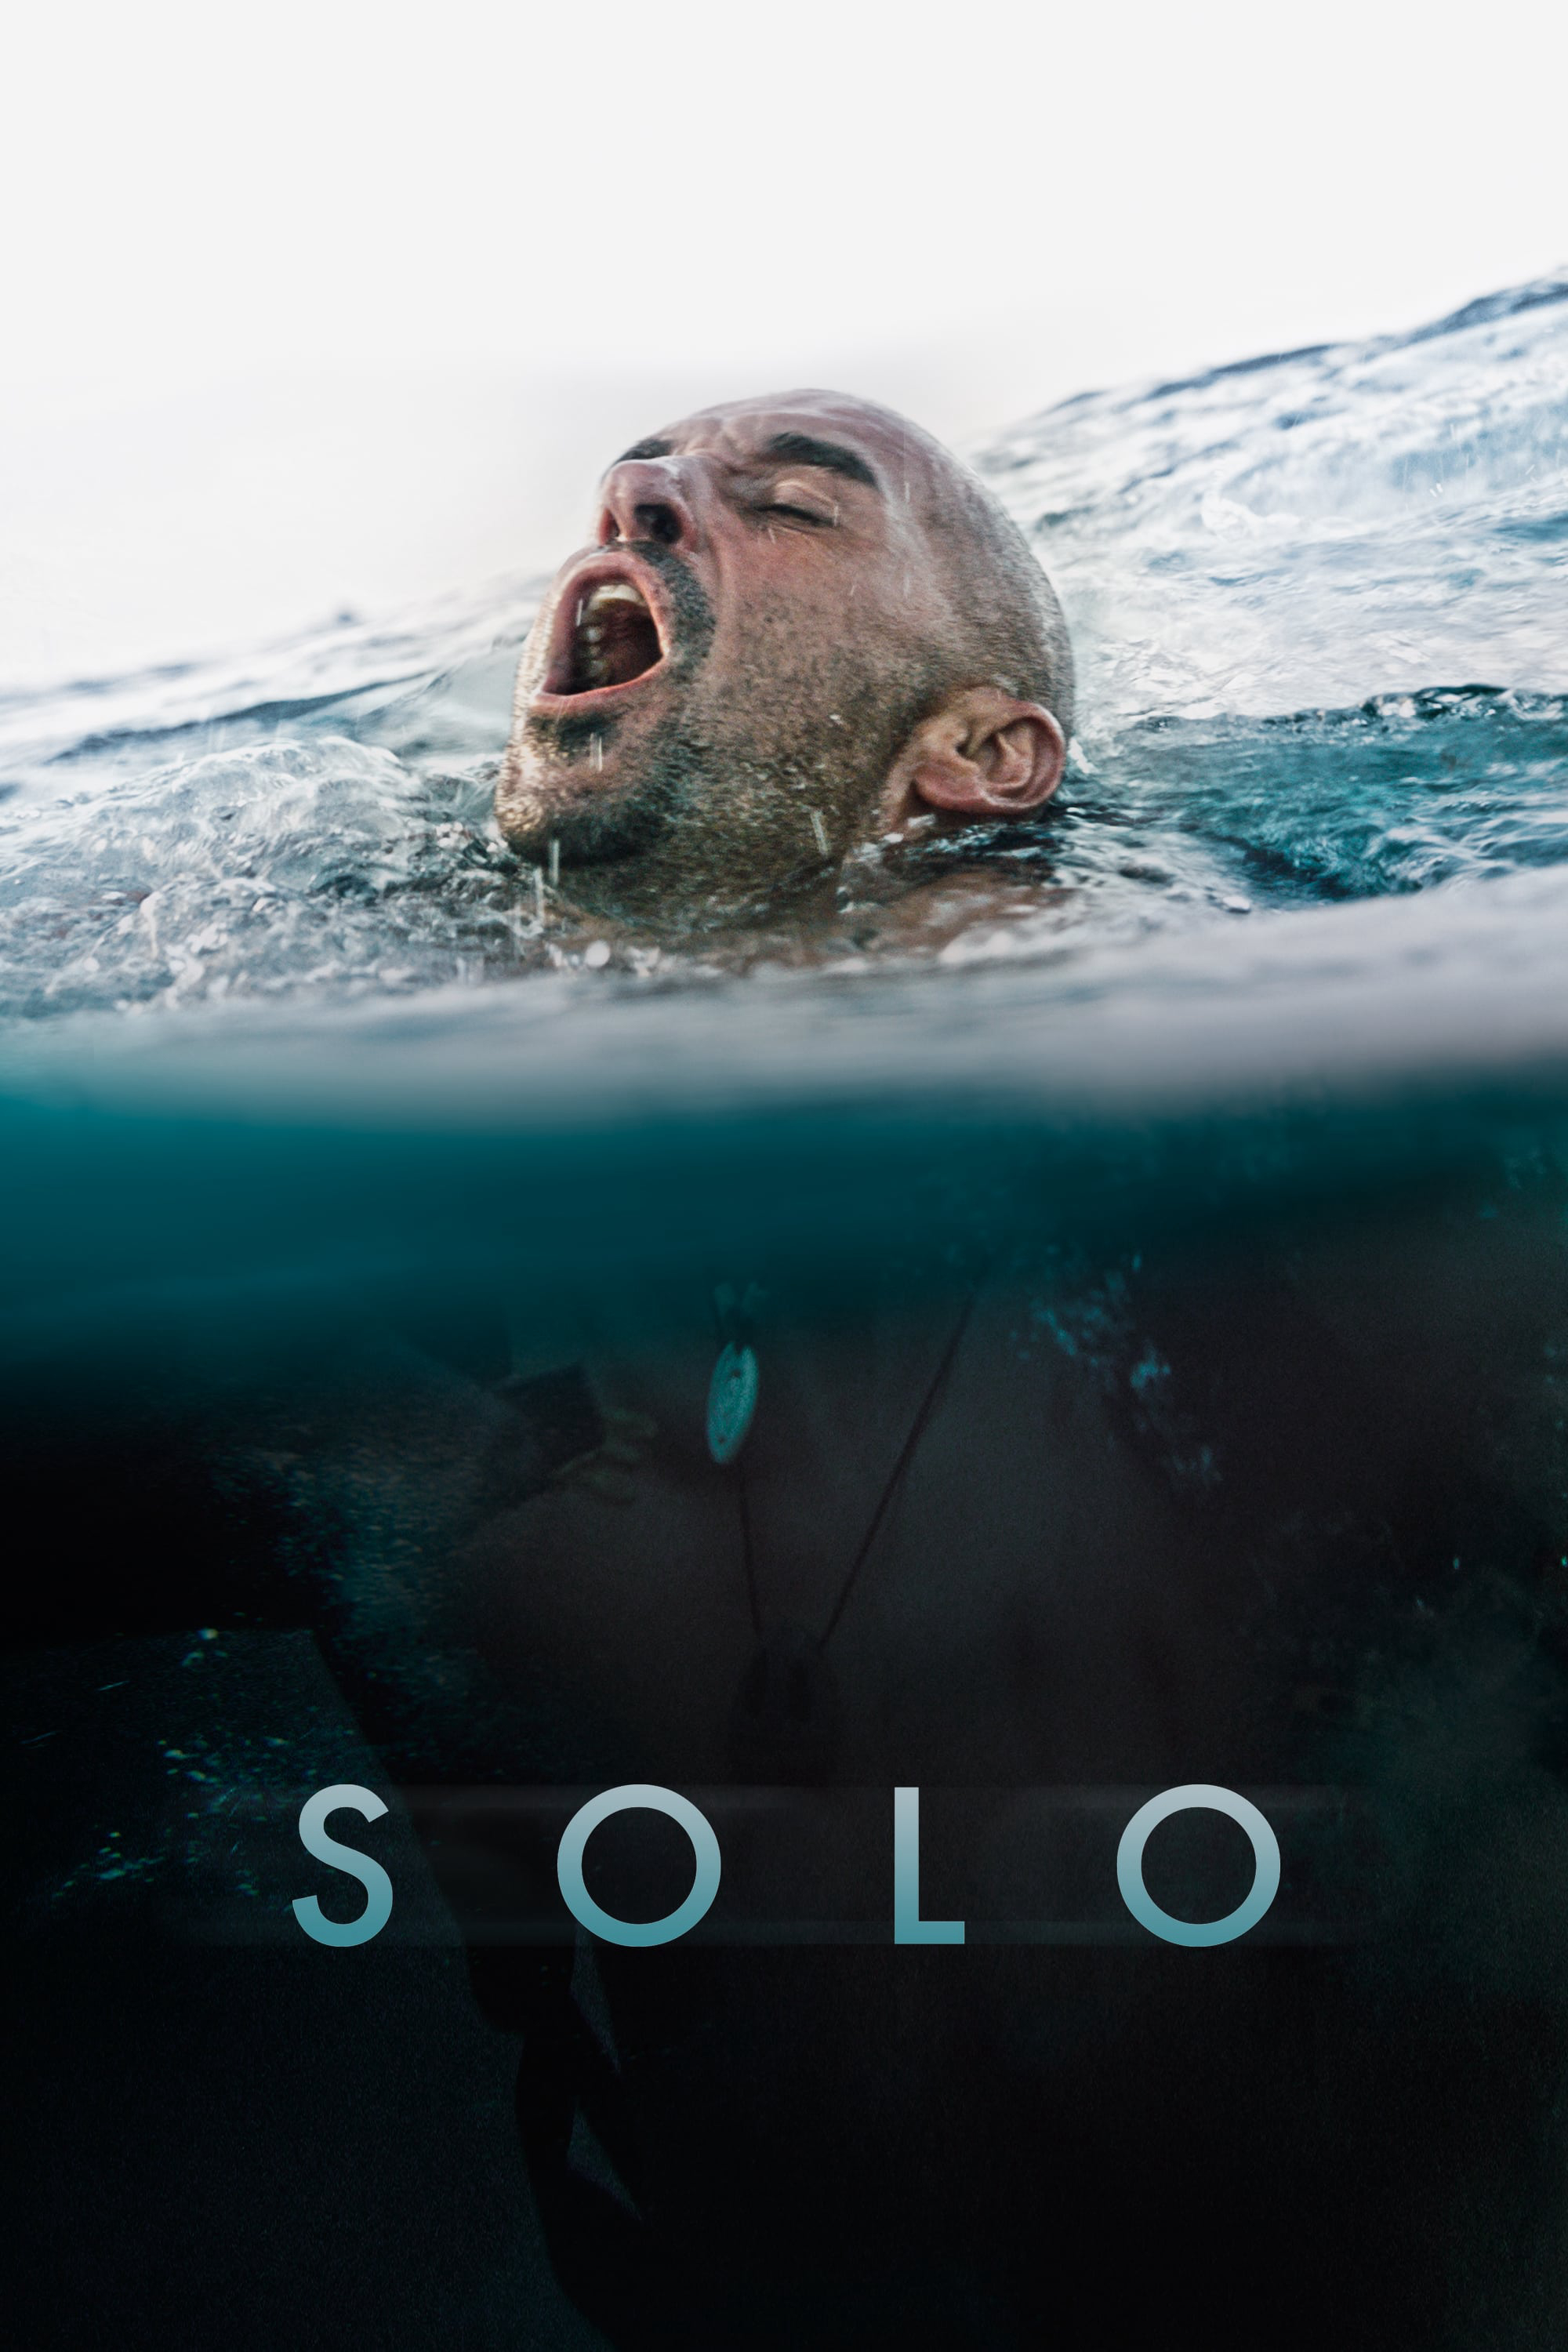 Đơn độc trên con sóng - Solo